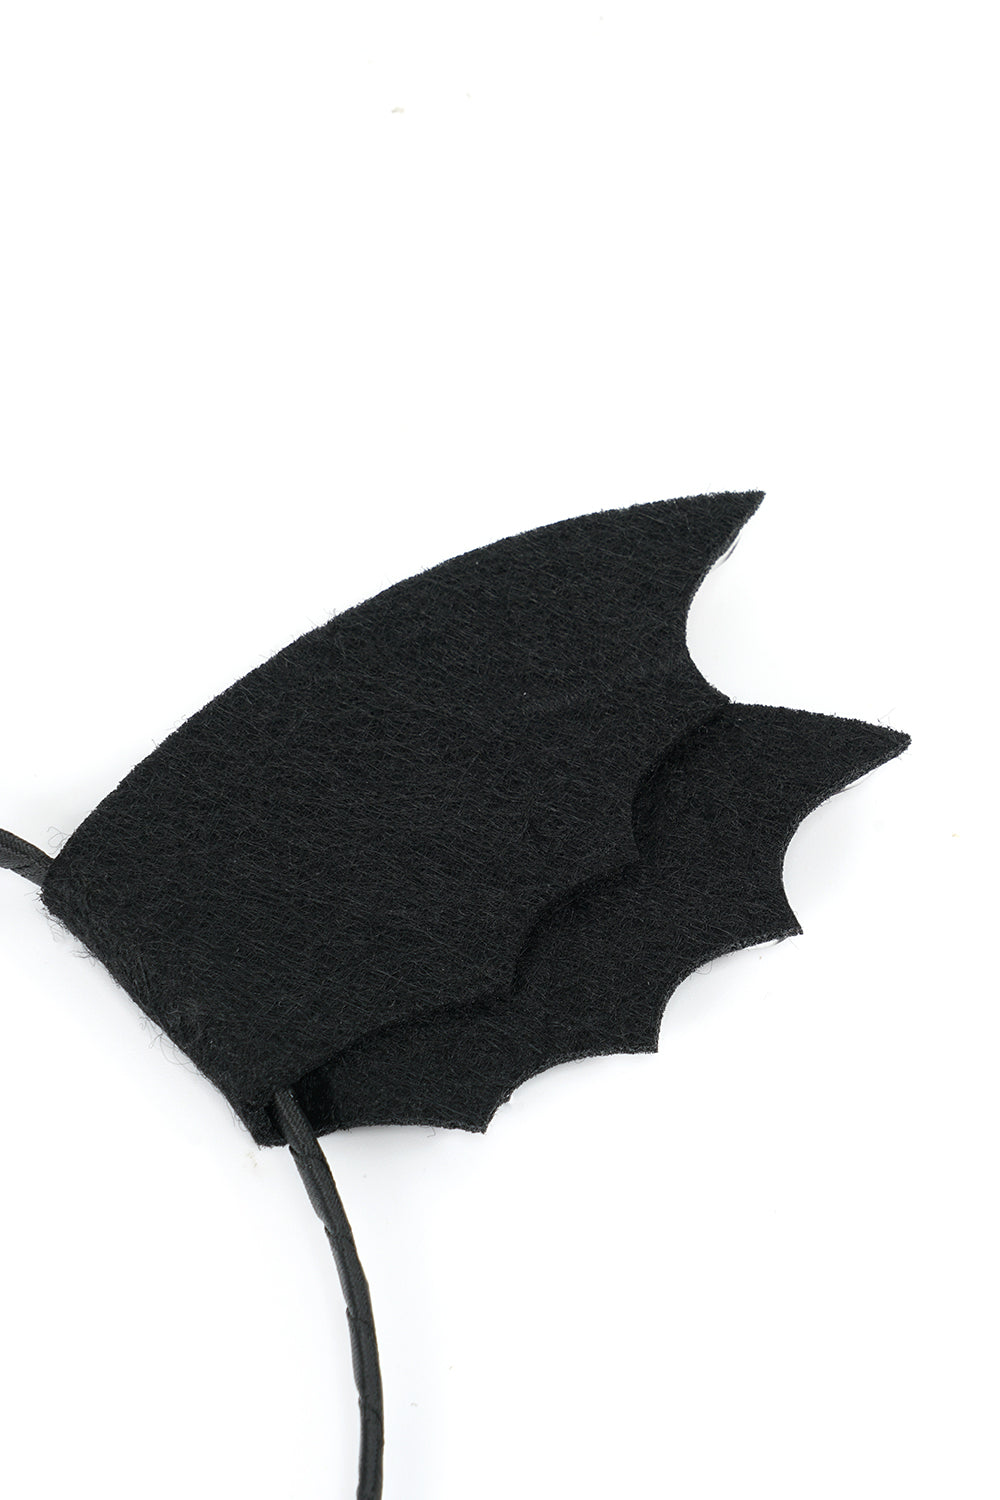 Halloween Bat Animal Ear Headband